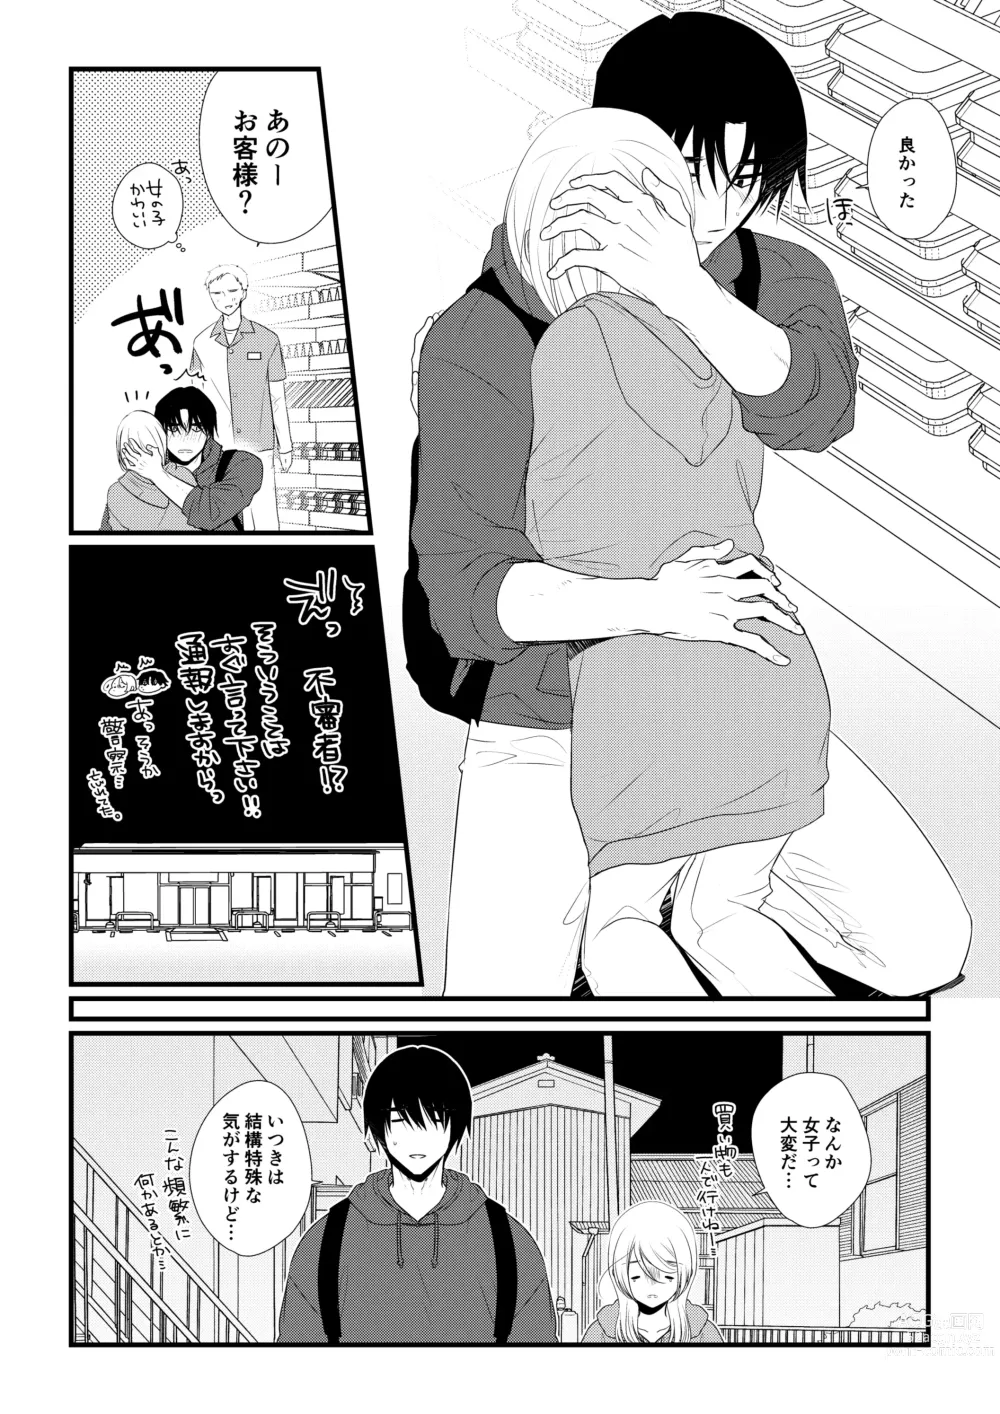 Page 89 of doujinshi Itsuki to Yuusei 2